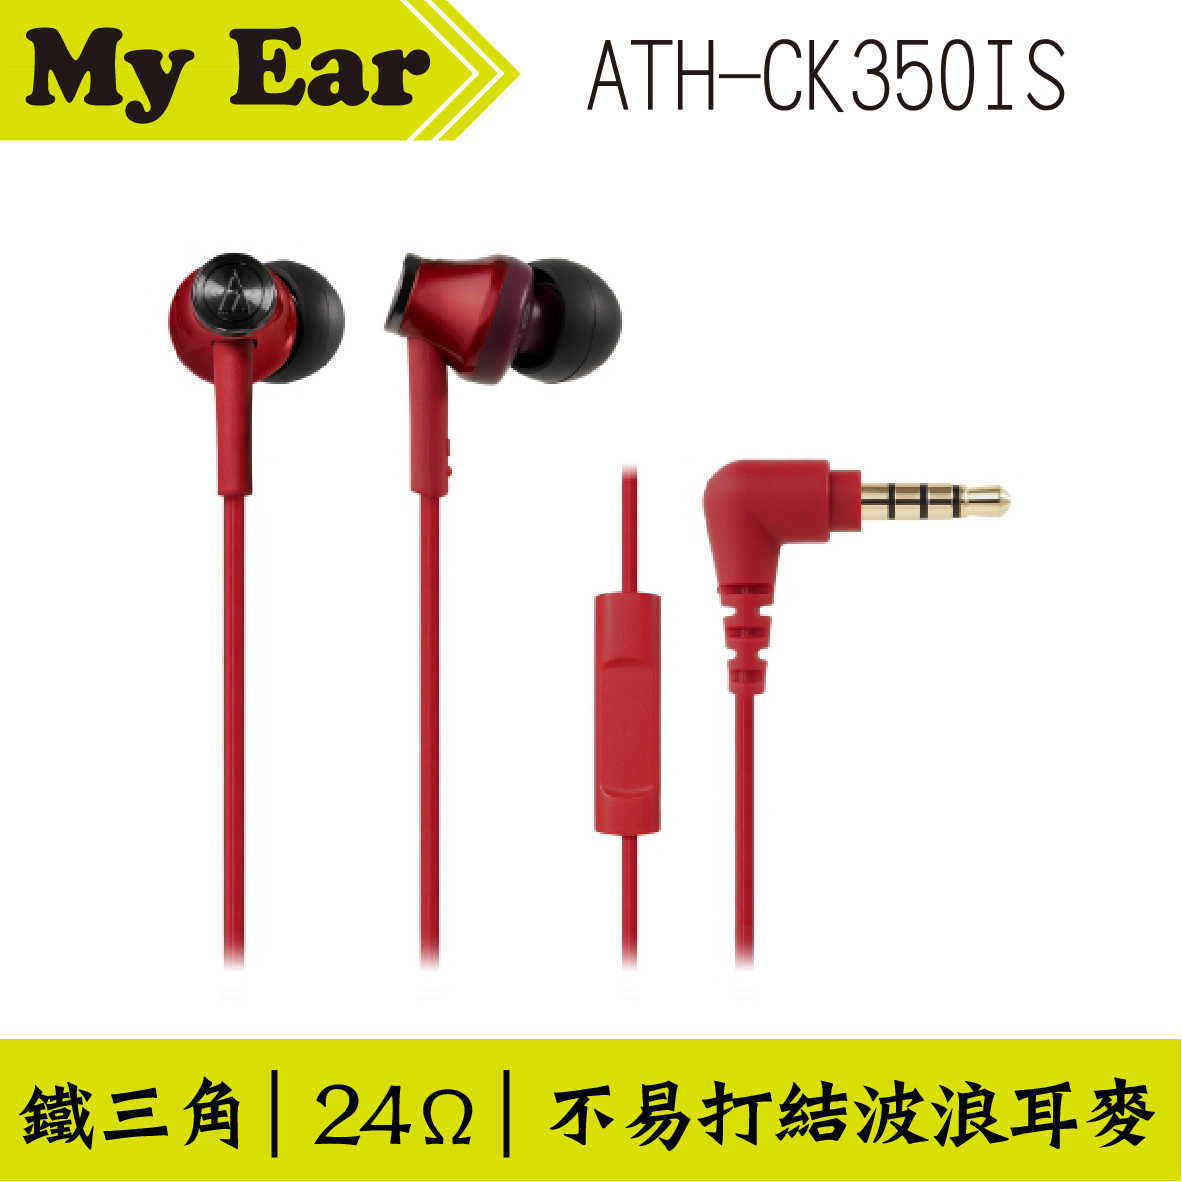 鐵三角 ATH-CK350IS 耳機麥克風 白色  | My Ear 耳機專門店